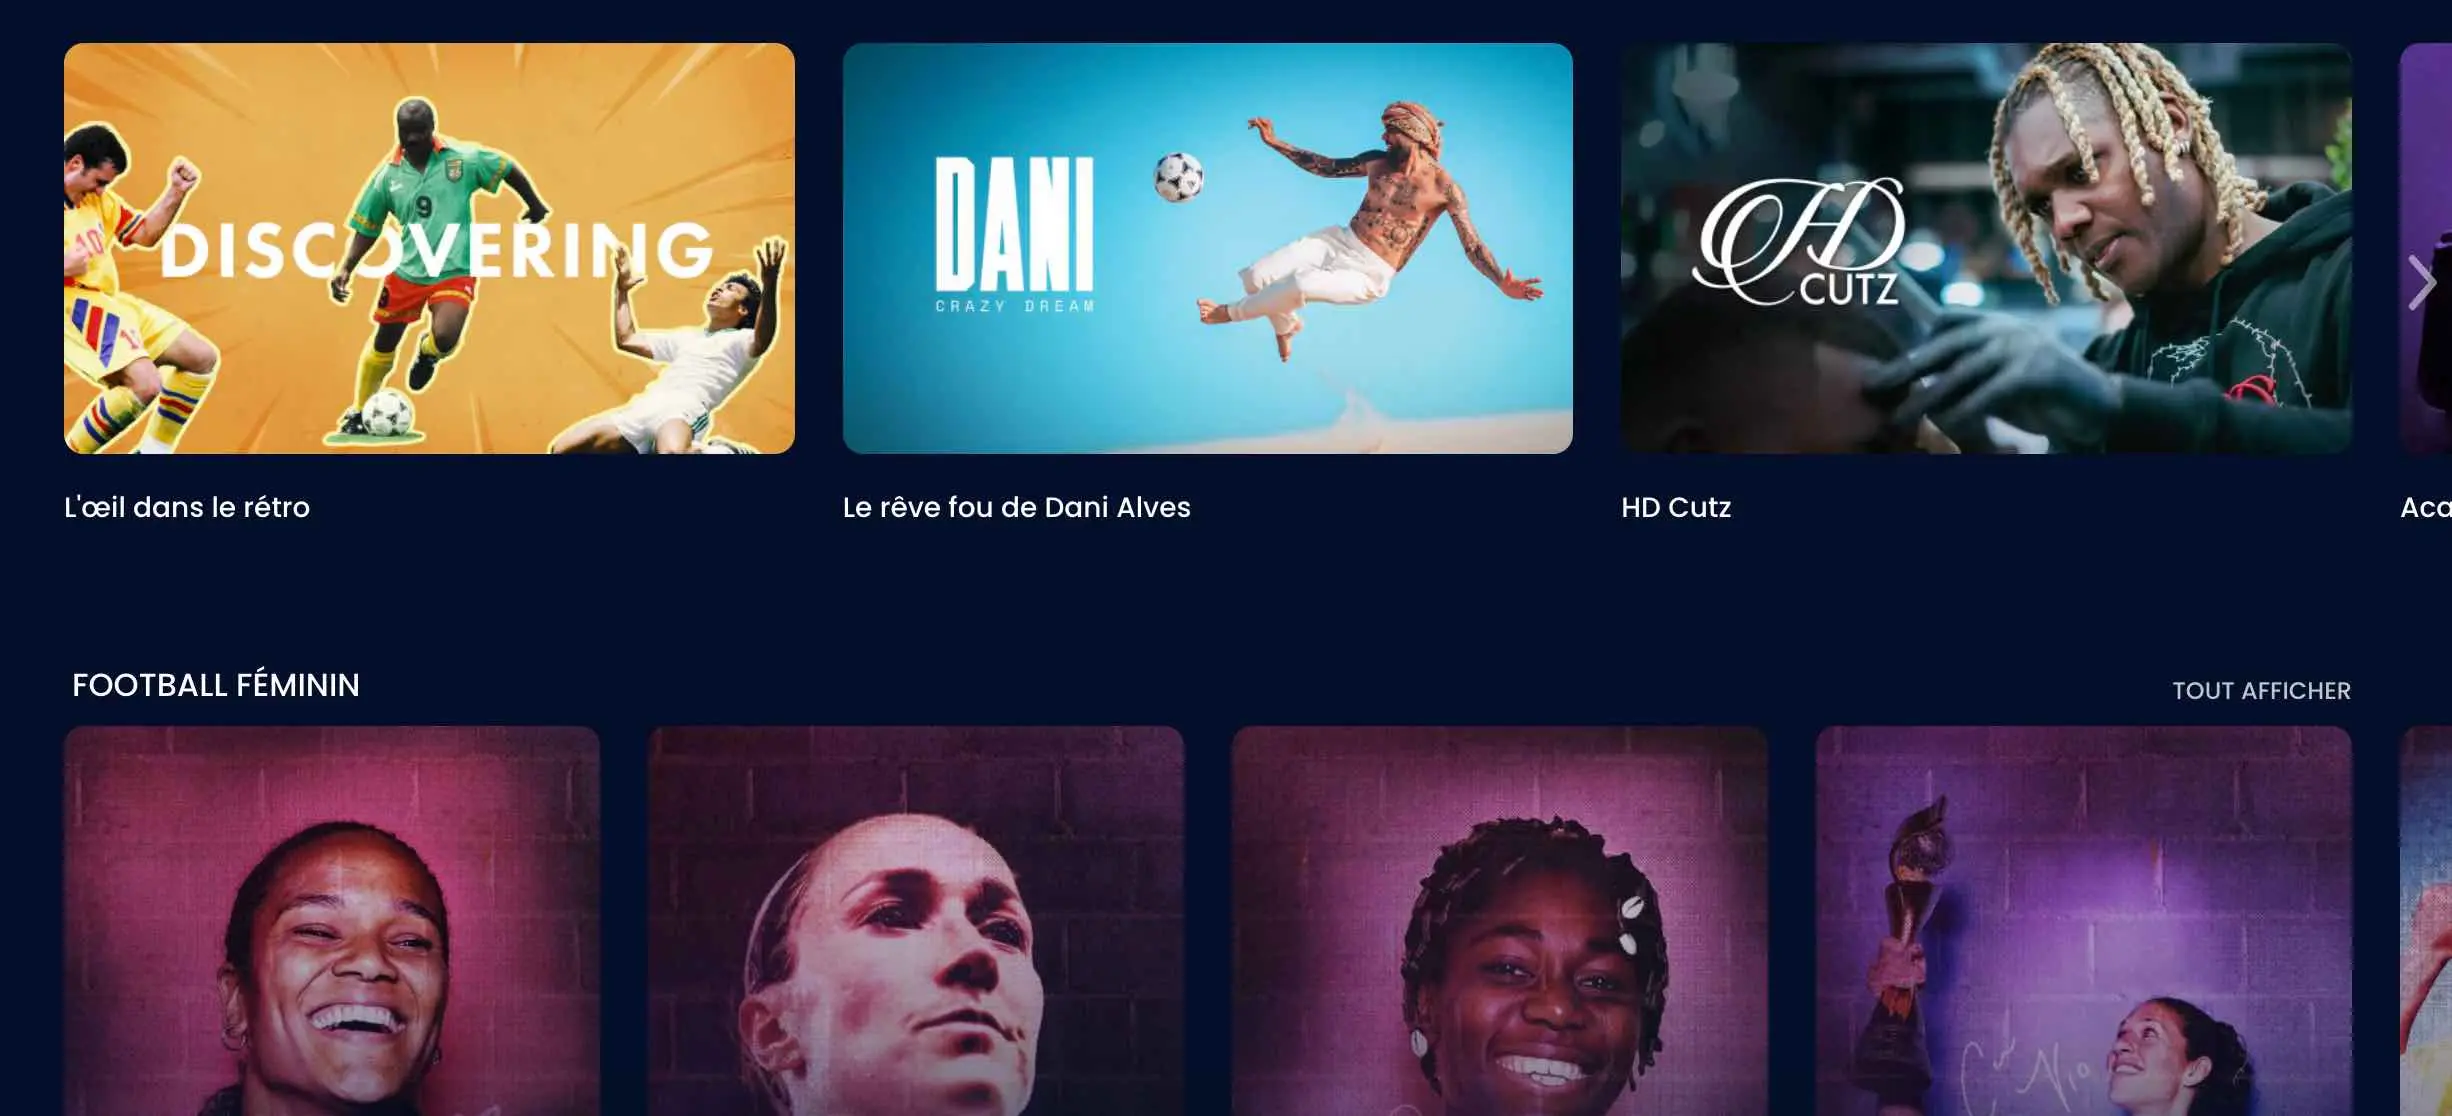 La FIFA lance FIFA+, une plateforme vidéo gratuite avec des matches en direct et des archives de Coupe du monde